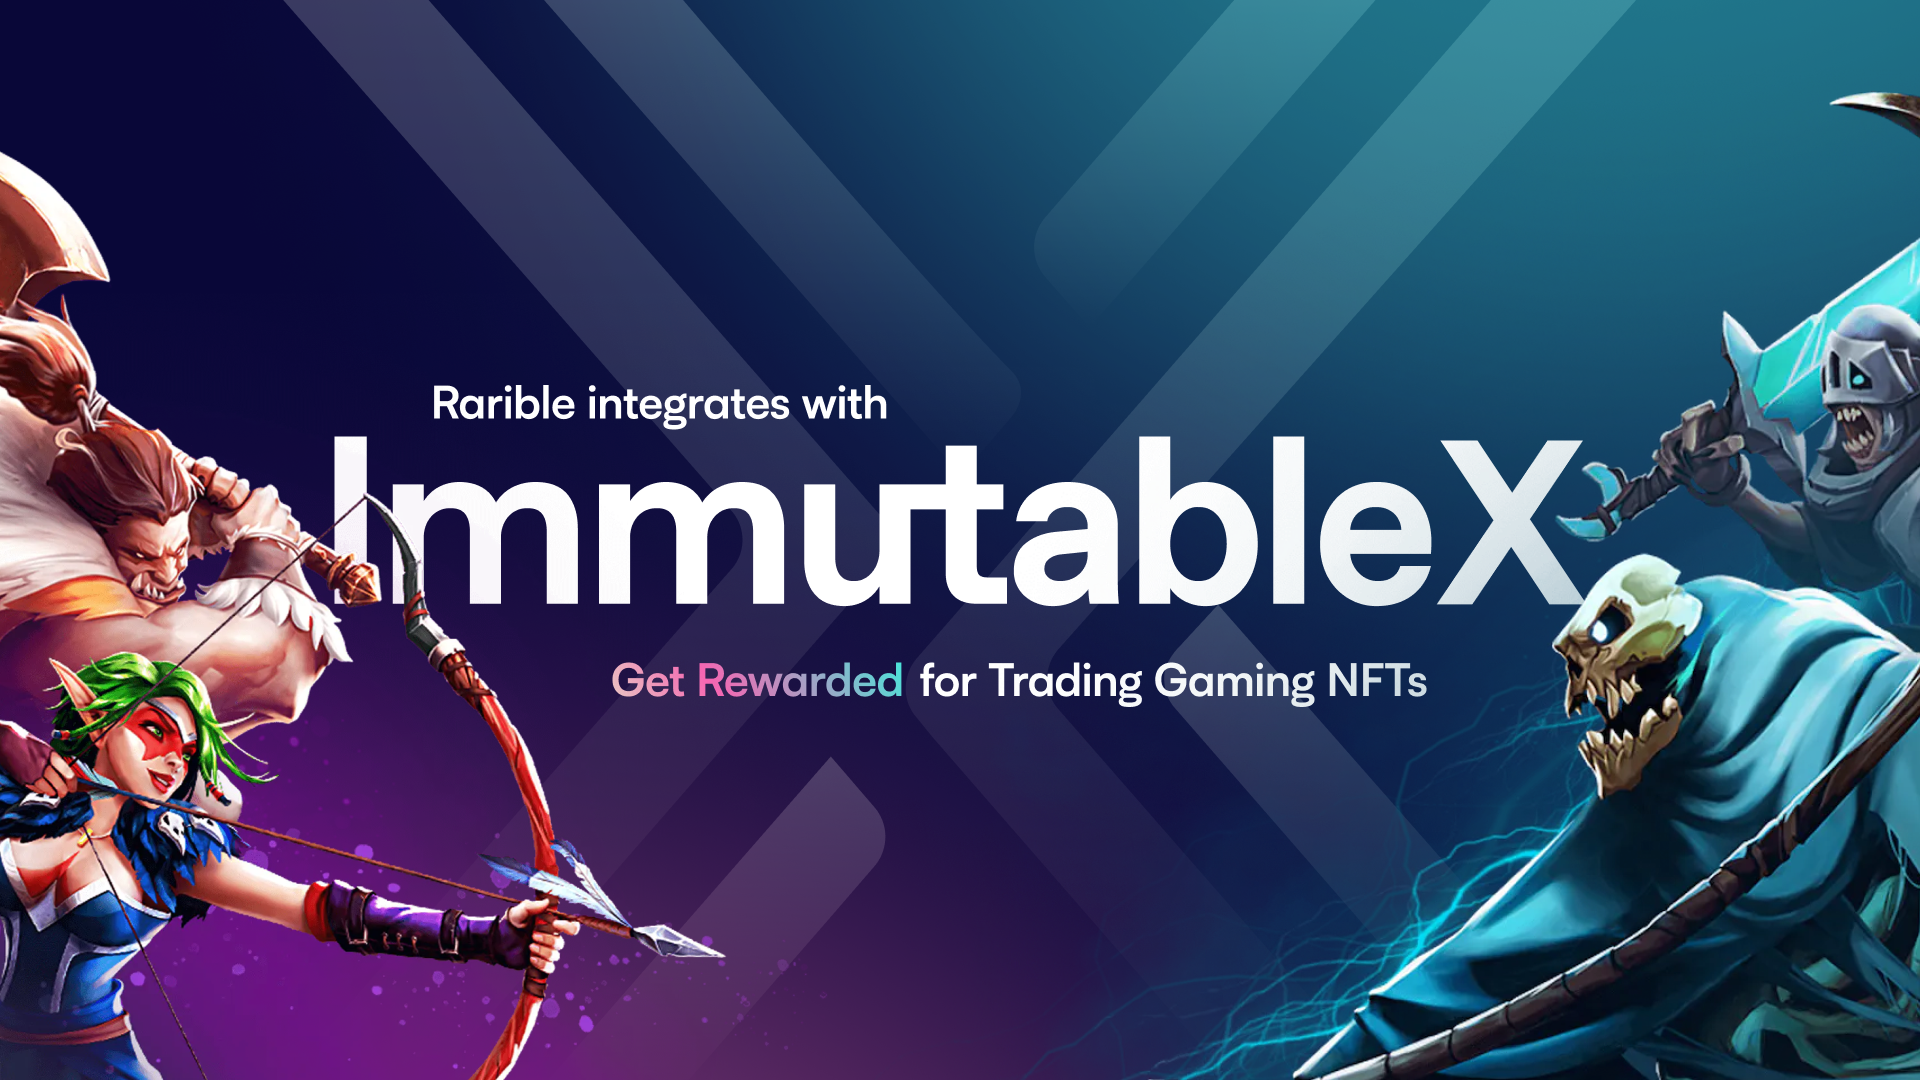 cartel digital de la fusión entre las plataformas Rarible e Immutable X